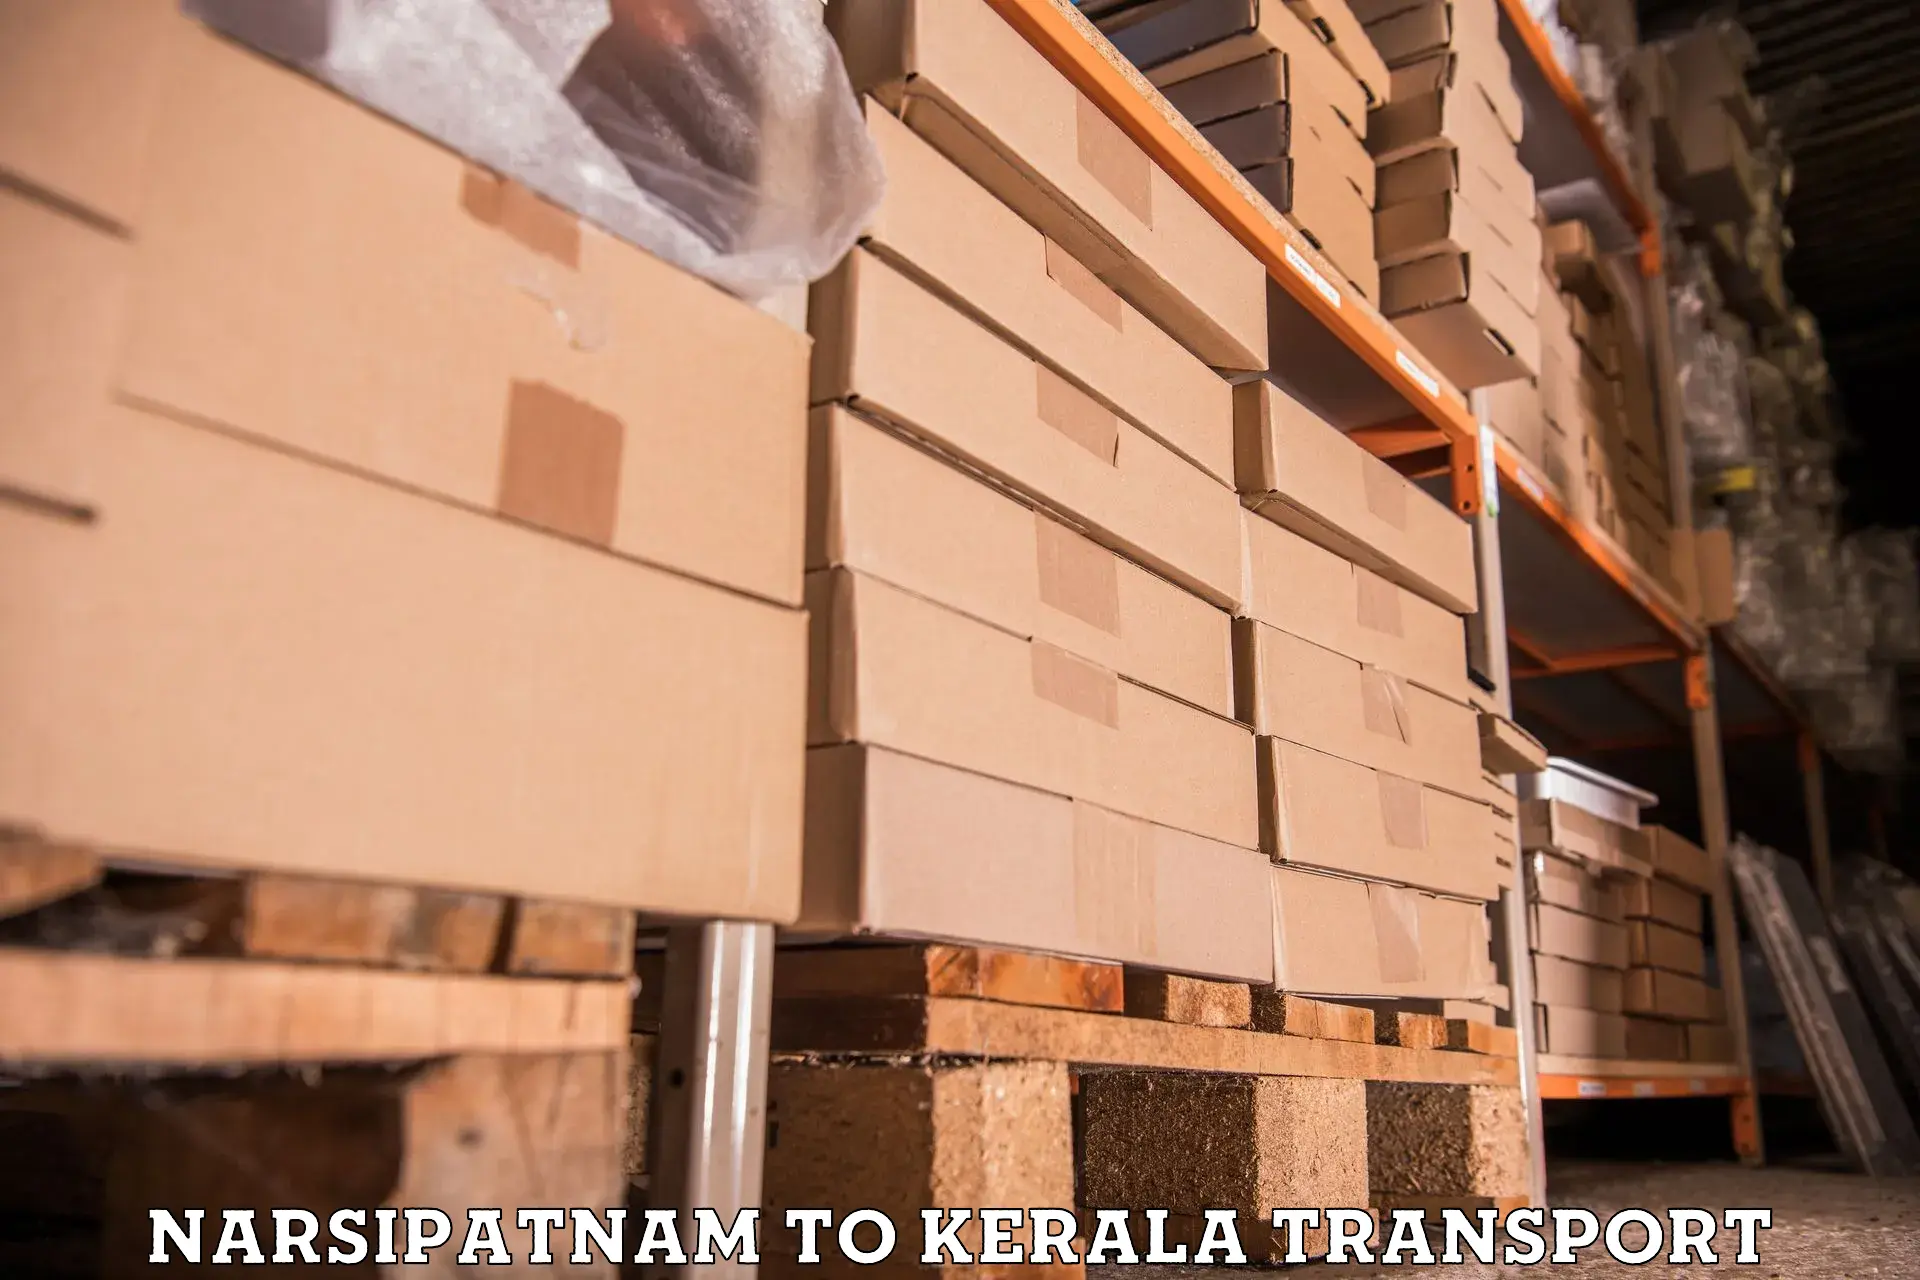 Road transport services in Narsipatnam to Kottarakkara